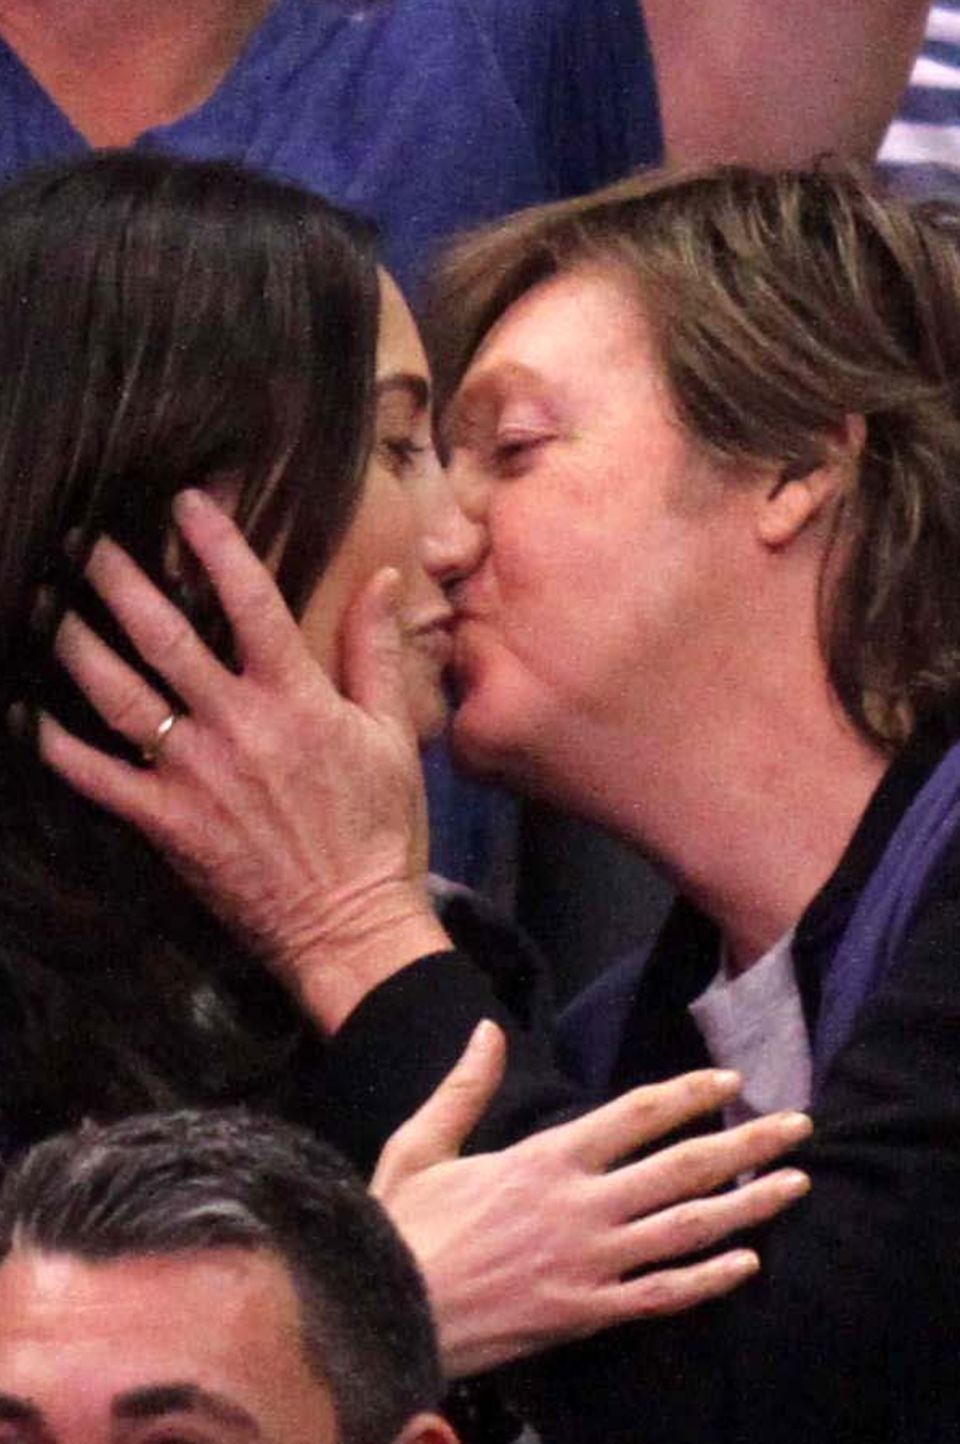 Bei einem Spiel der "Los Angeles Clippers" erwischt die "Kiss-Cam" Paul McCartney und Nancy Shevell: Sie müssen sich küssen und das ganze Stadion freut sich.